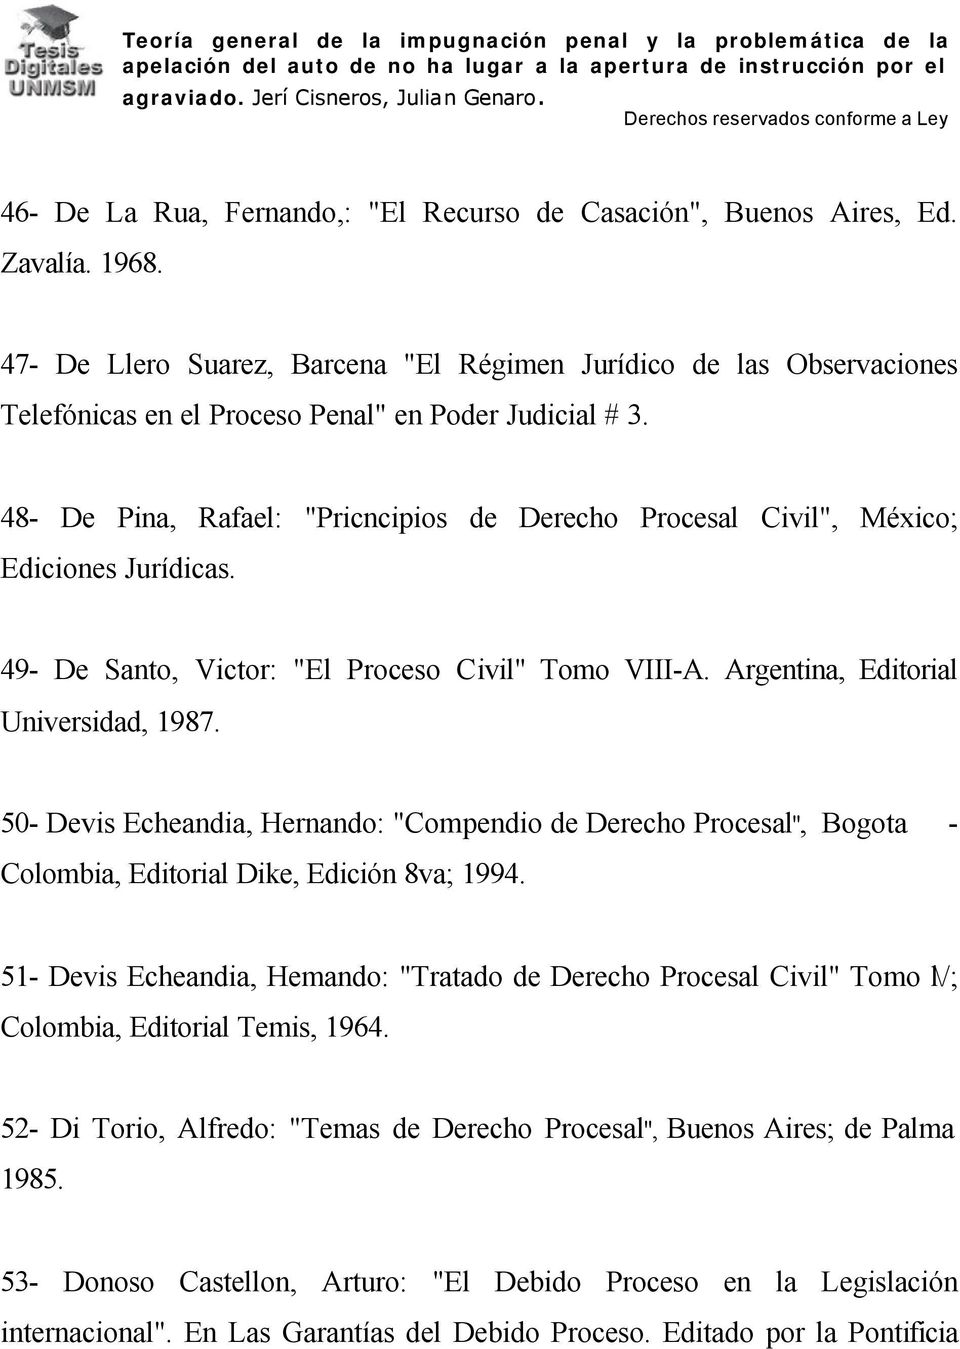 48- De Pina, Rafael: "Pricncipios de Derecho Procesal Civil", México; Ediciones Jurídicas. 49- De Santo, Victor: "El Proceso Civil" Tomo VIII-A. Argentina, Editorial Universidad, 1987.